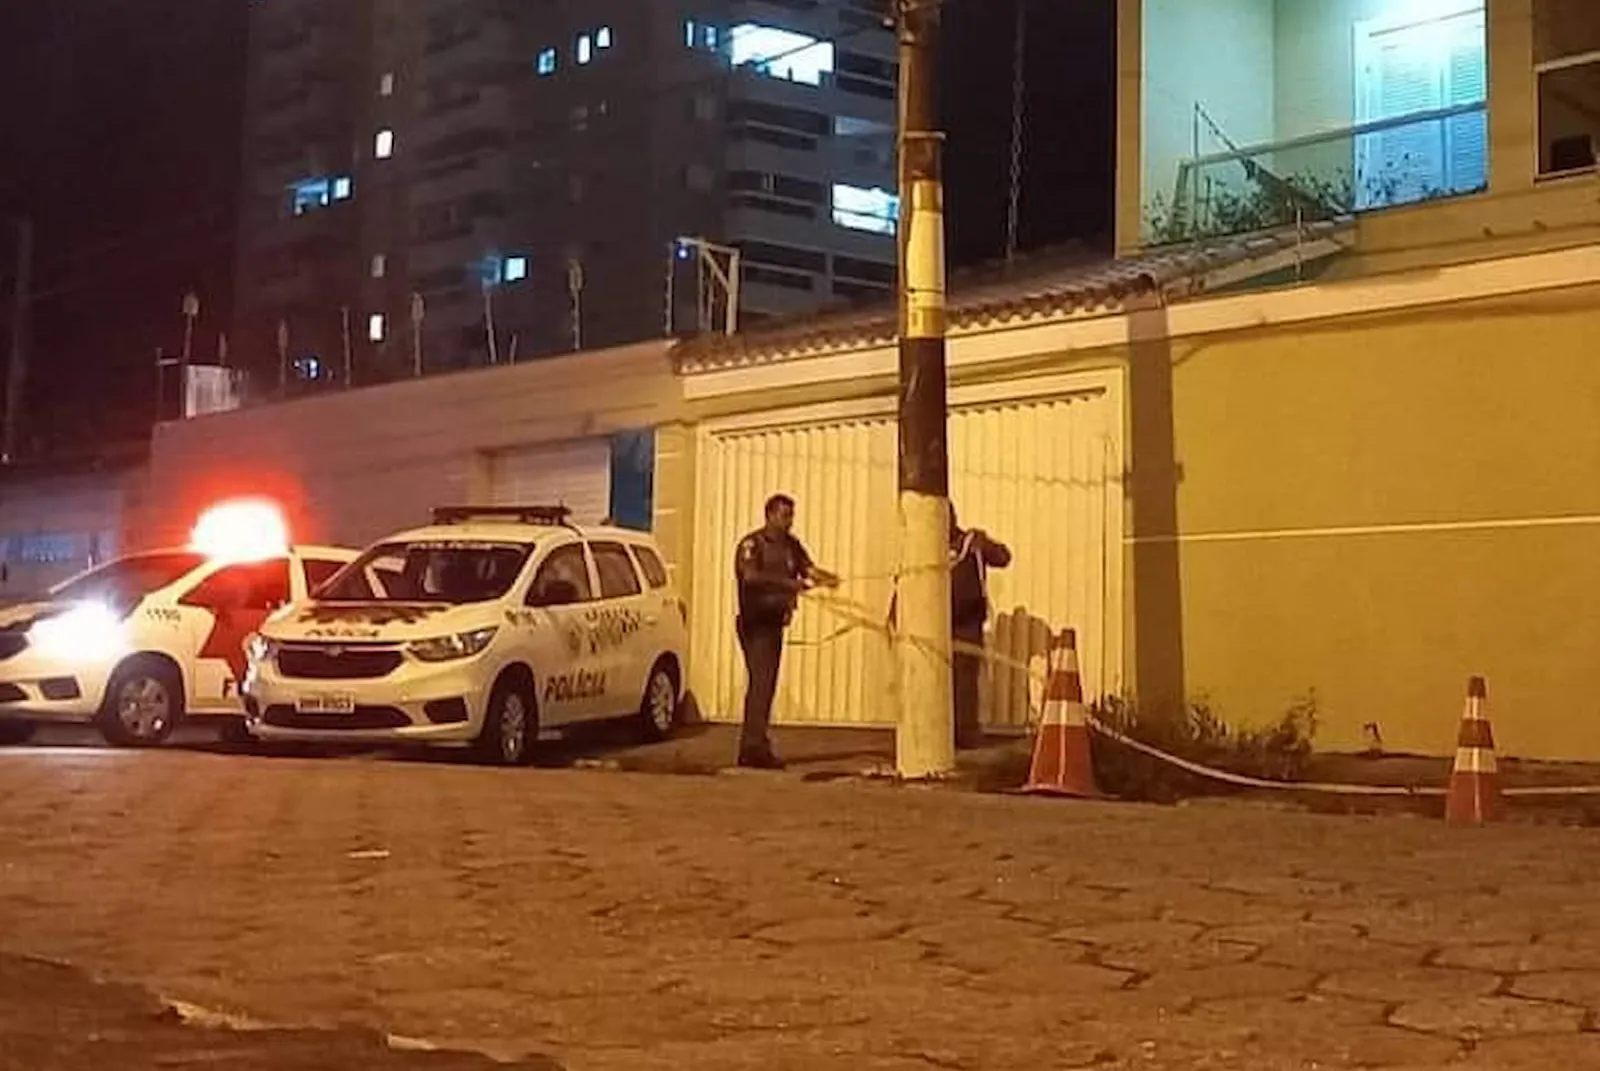 Caso ocorreu em frente a residência do casal no bairro Canto do Forte